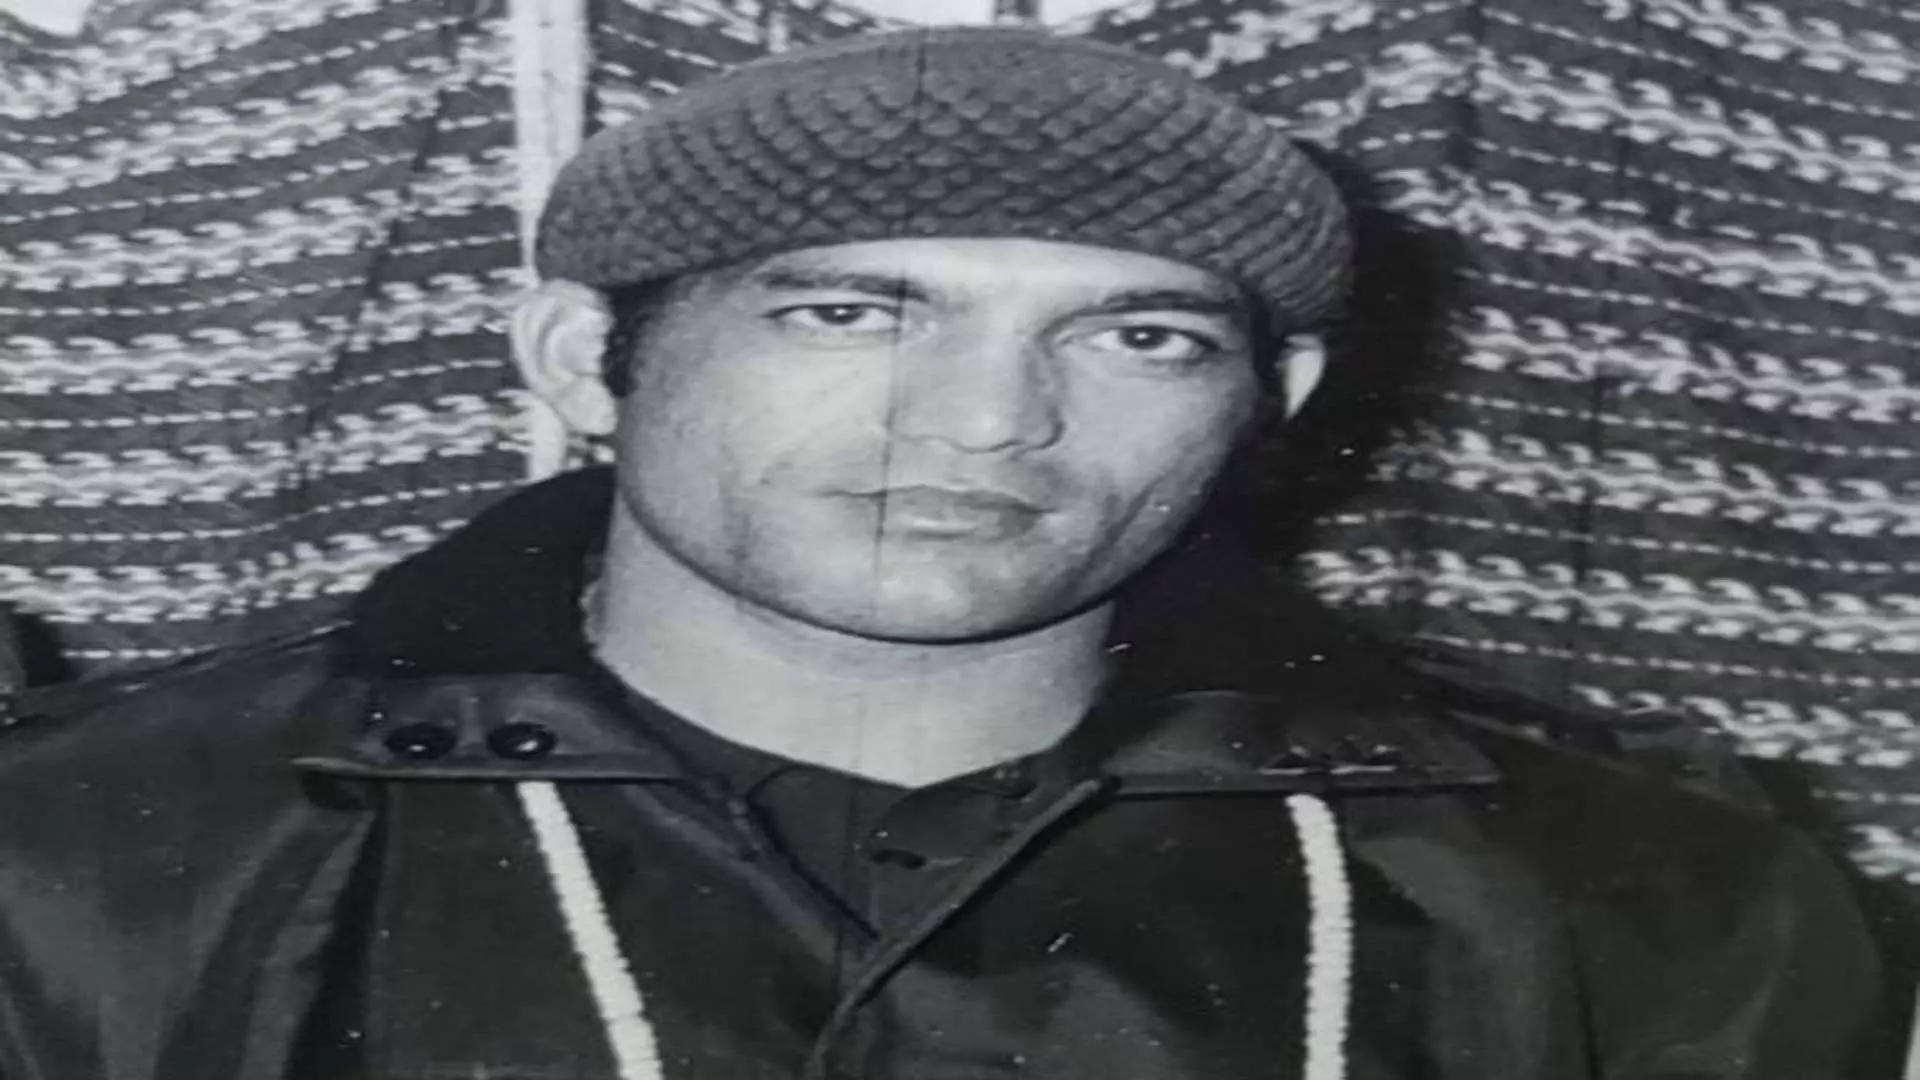 Former भारतीय मिडफील्डर भूपिंदर सिंह रावत का निधन